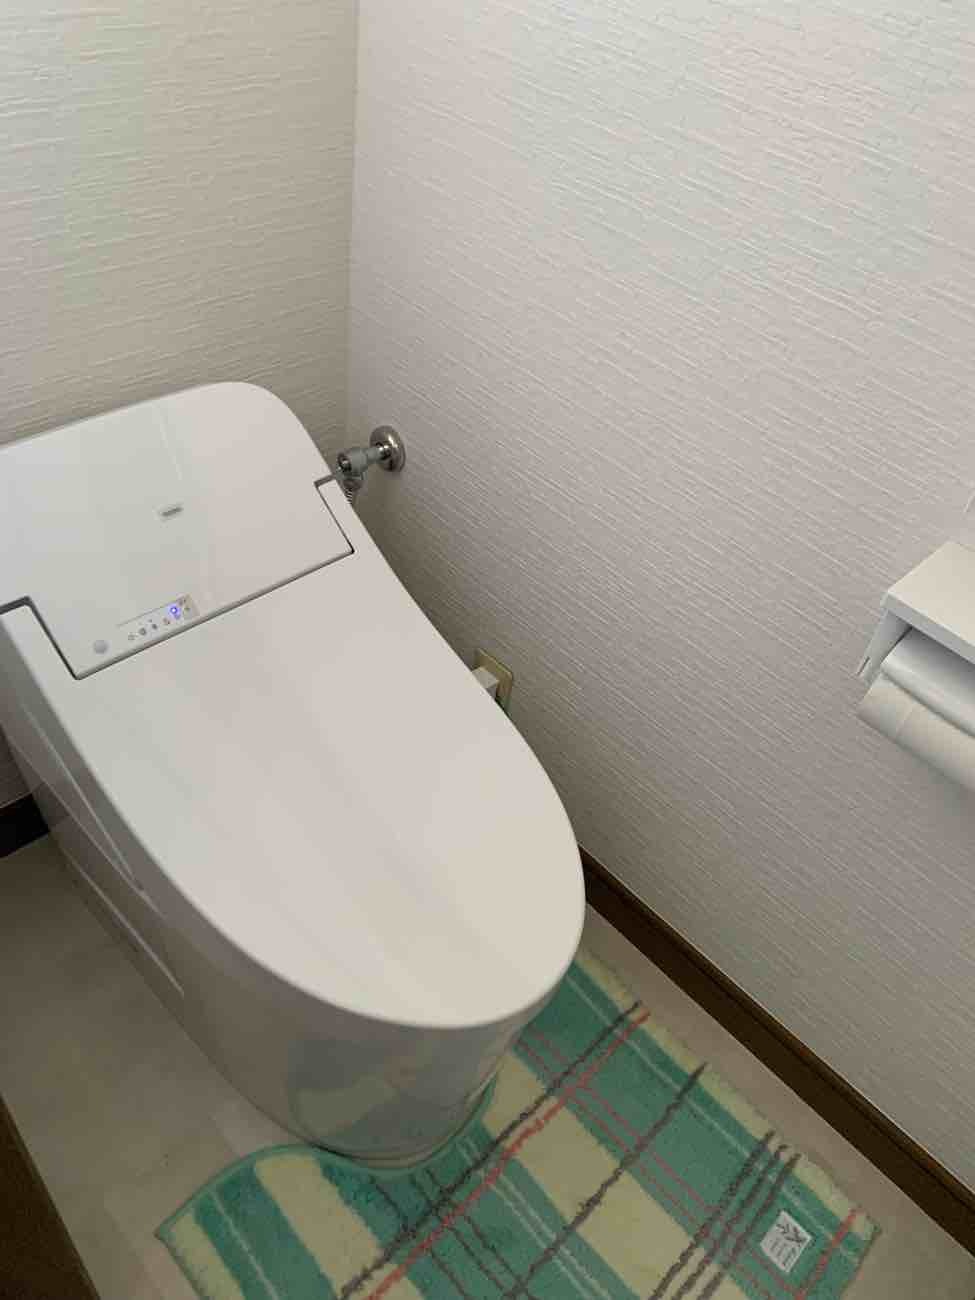 【埼玉県三郷市】S様邸トイレ交換工事が完了しました。TOTO GG1 画像